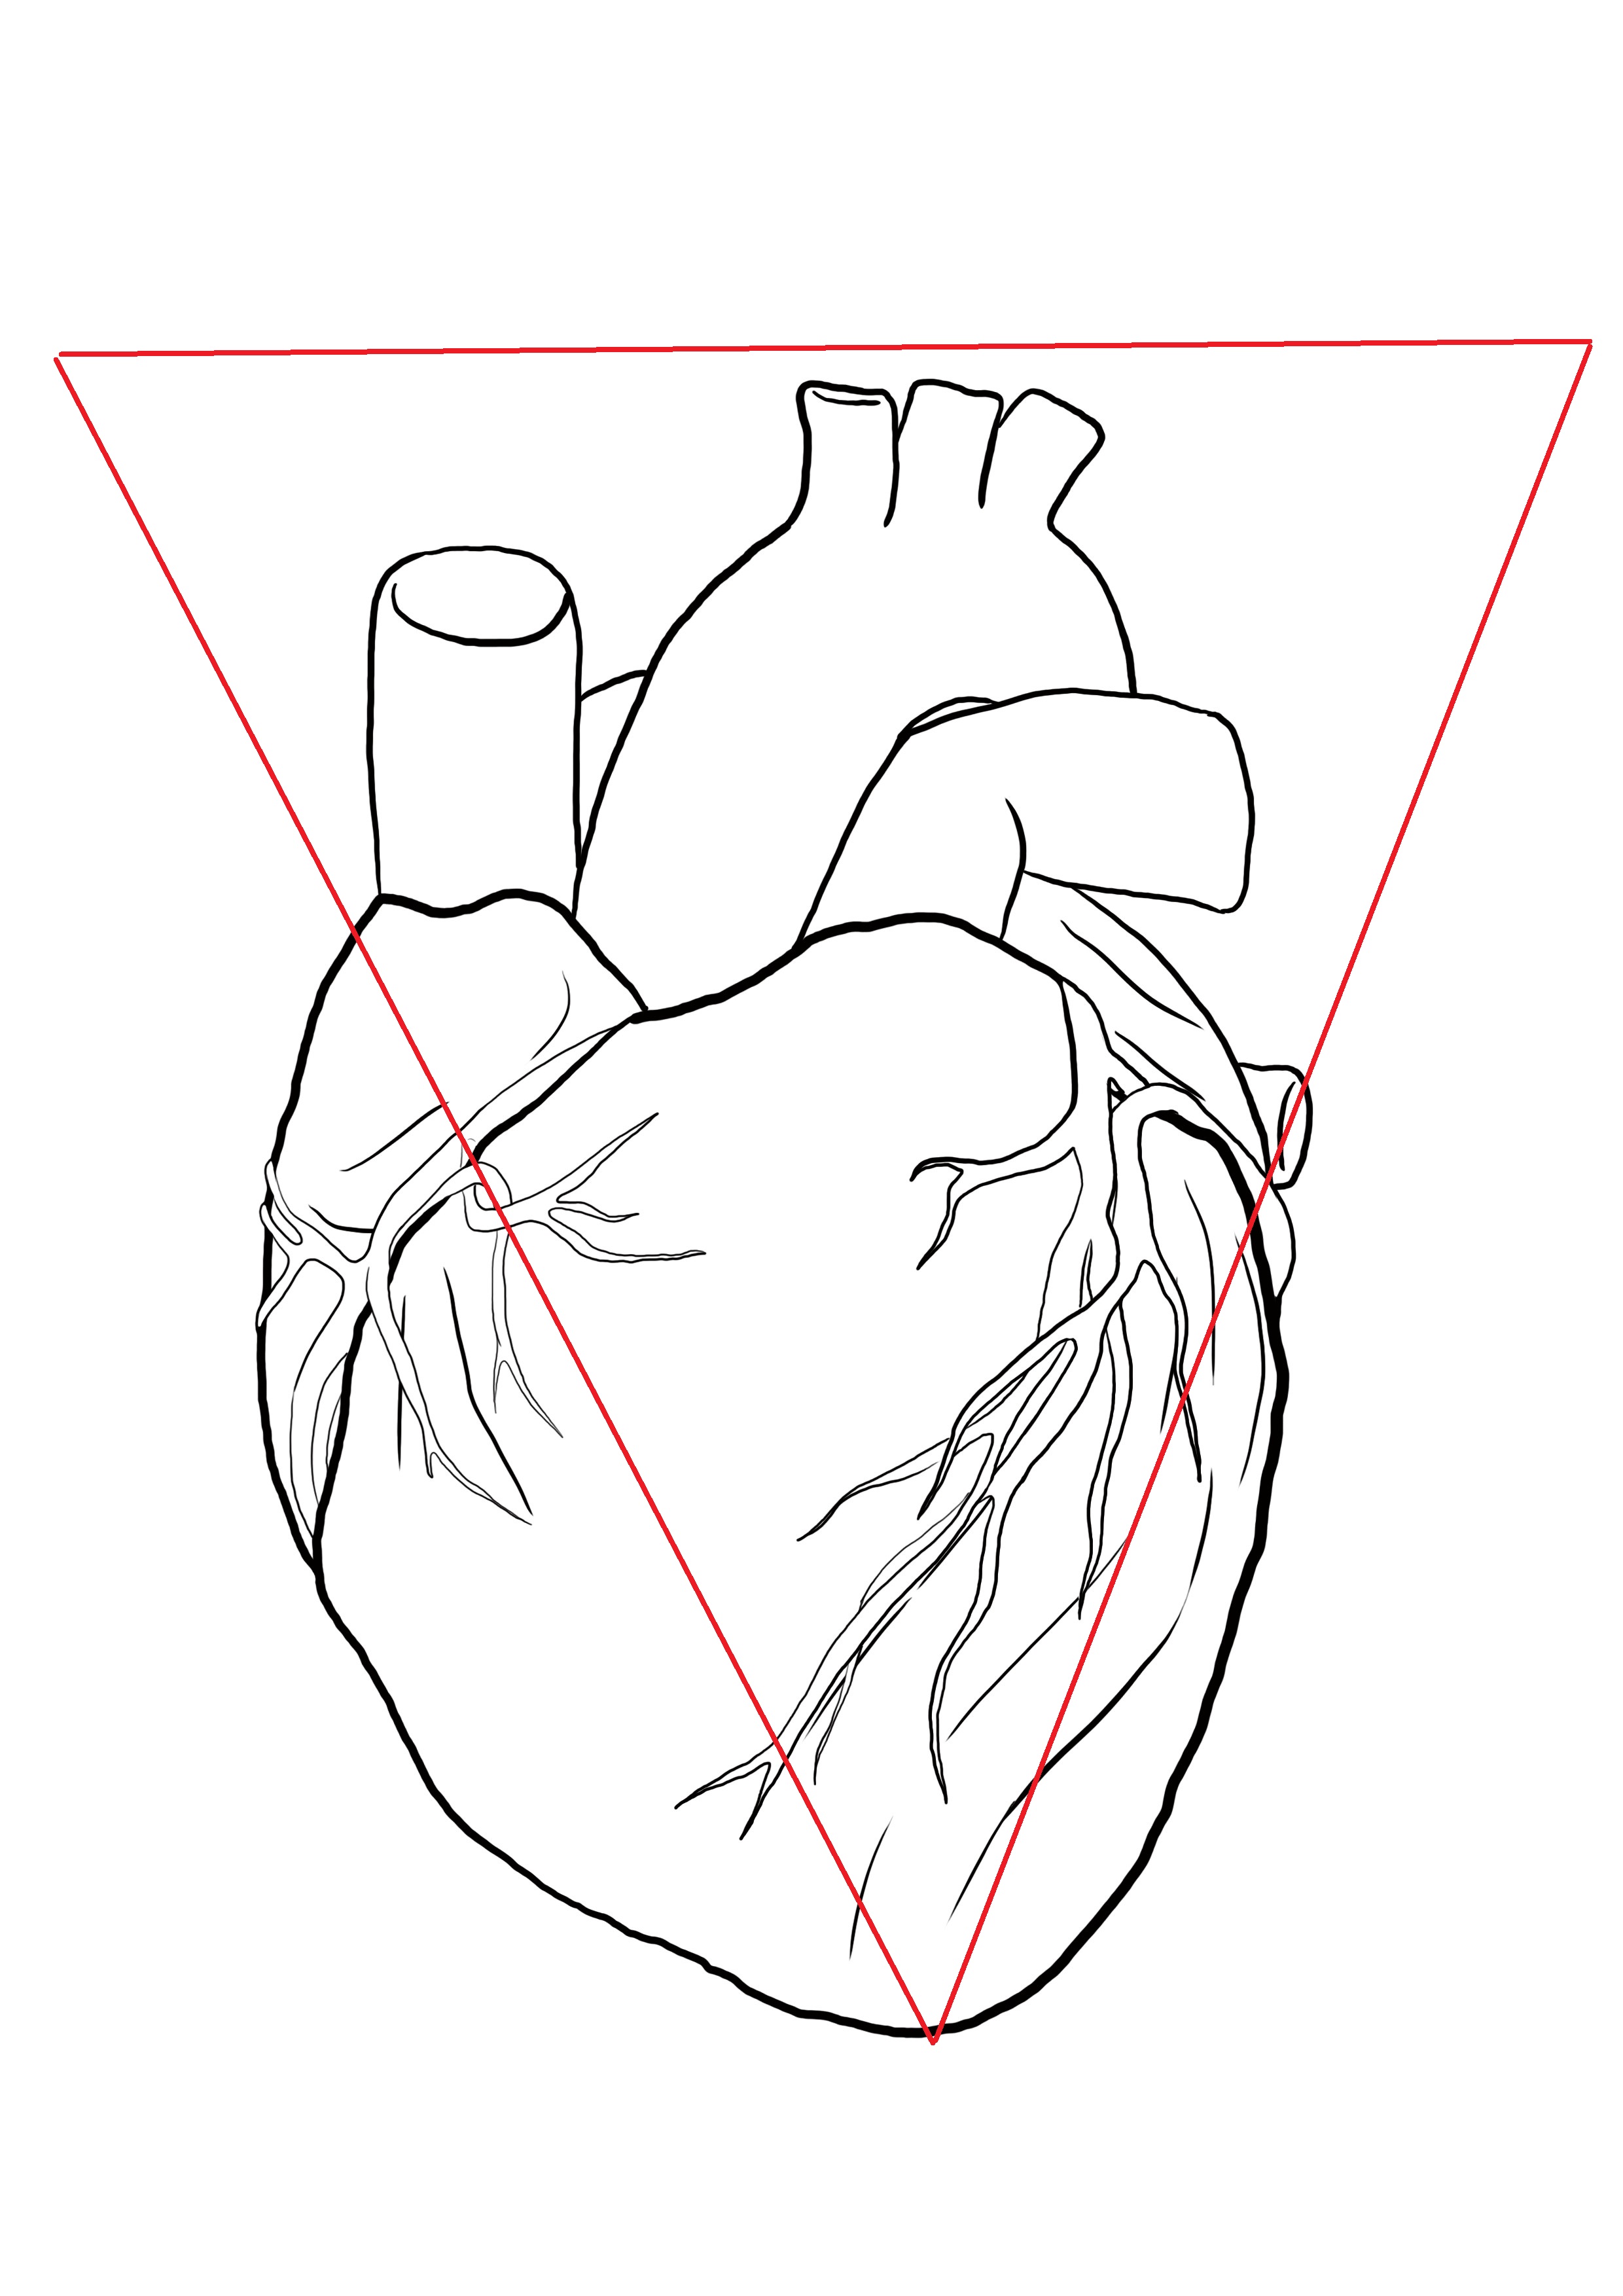 schéma représentant la forme du coeur humain